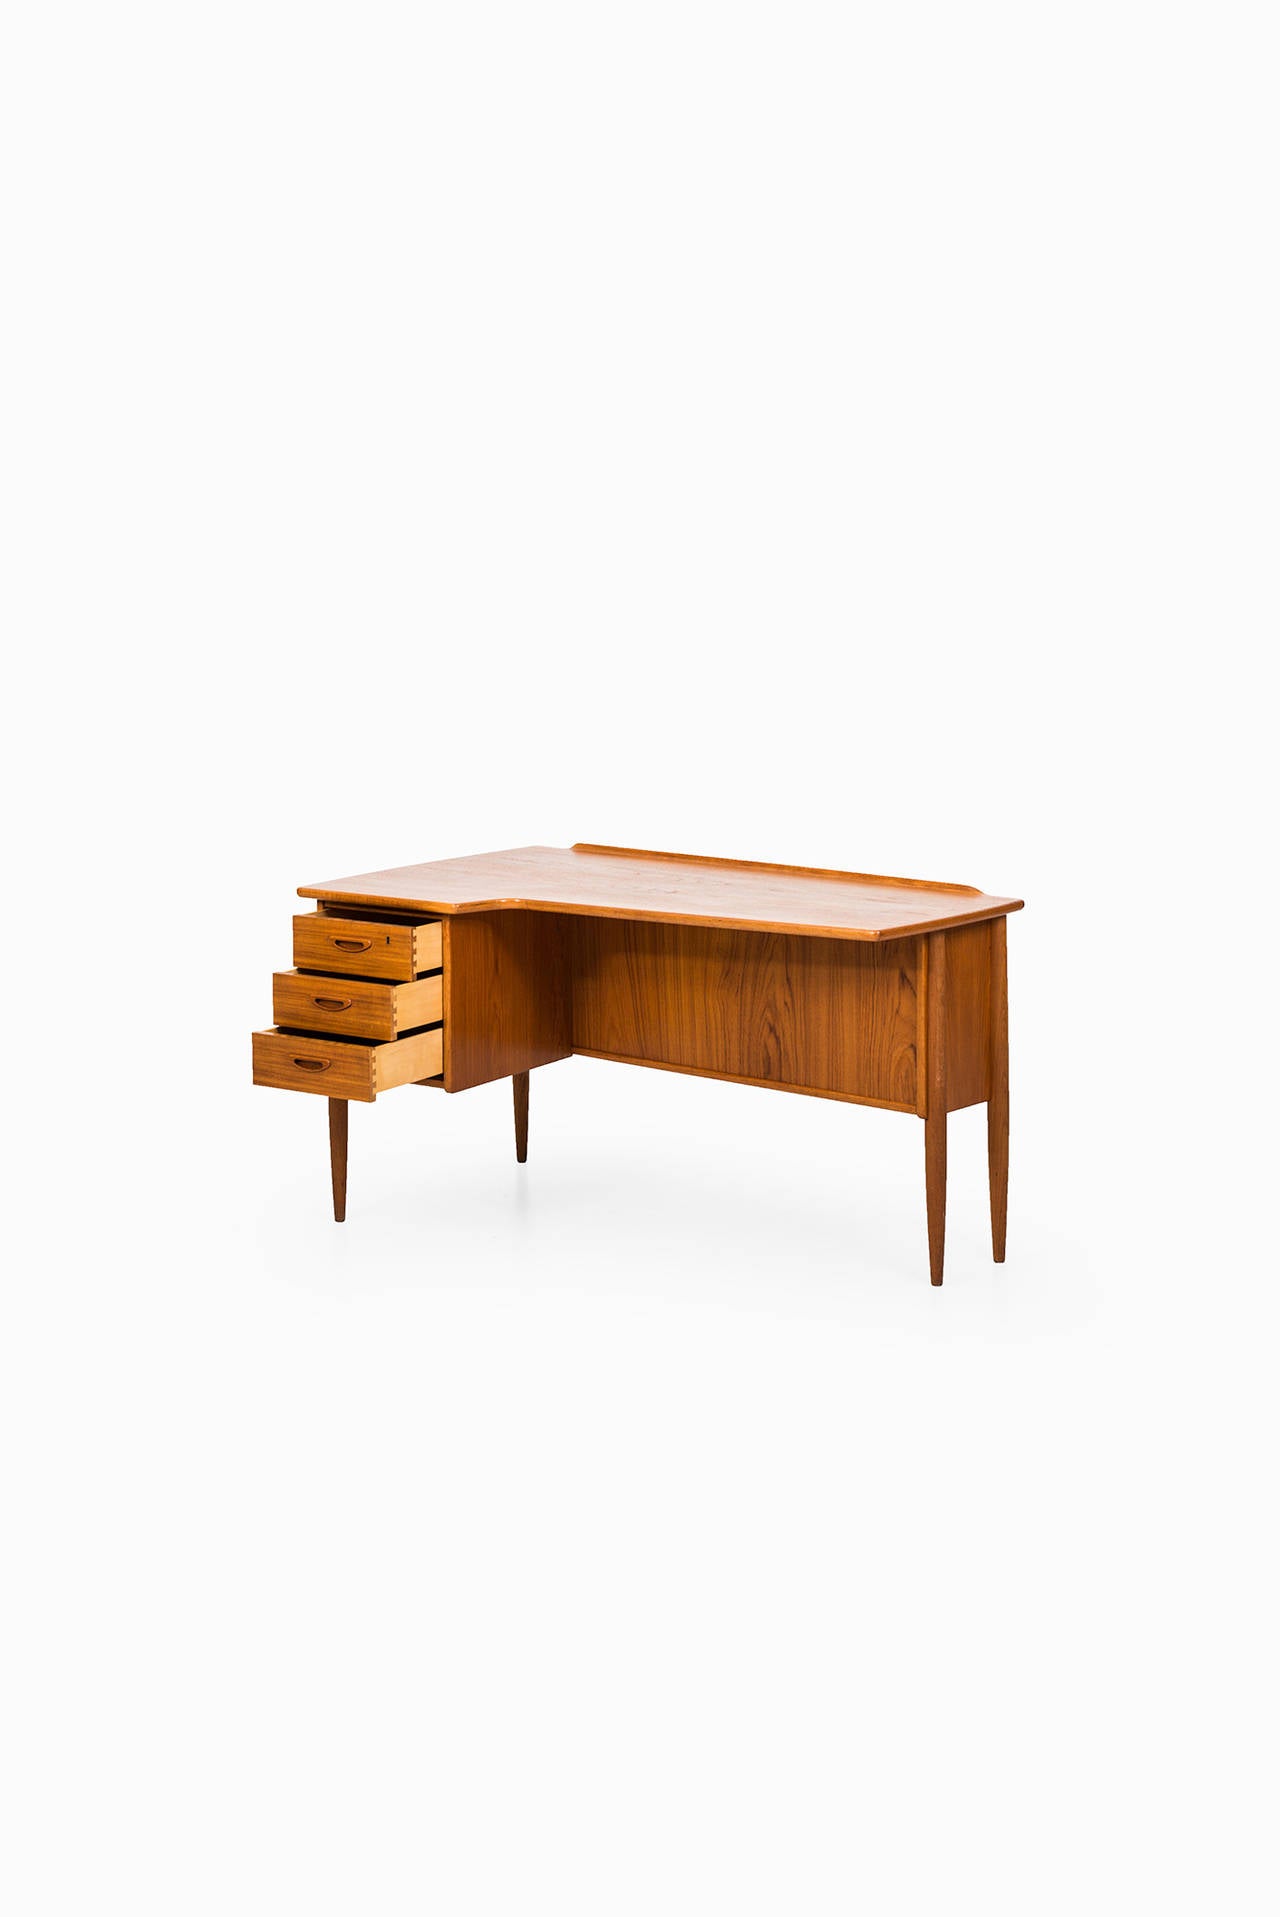 Mid-20th Century Göran Strand Desk Model A10 by Lelångs Möbelfabrik in Sweden